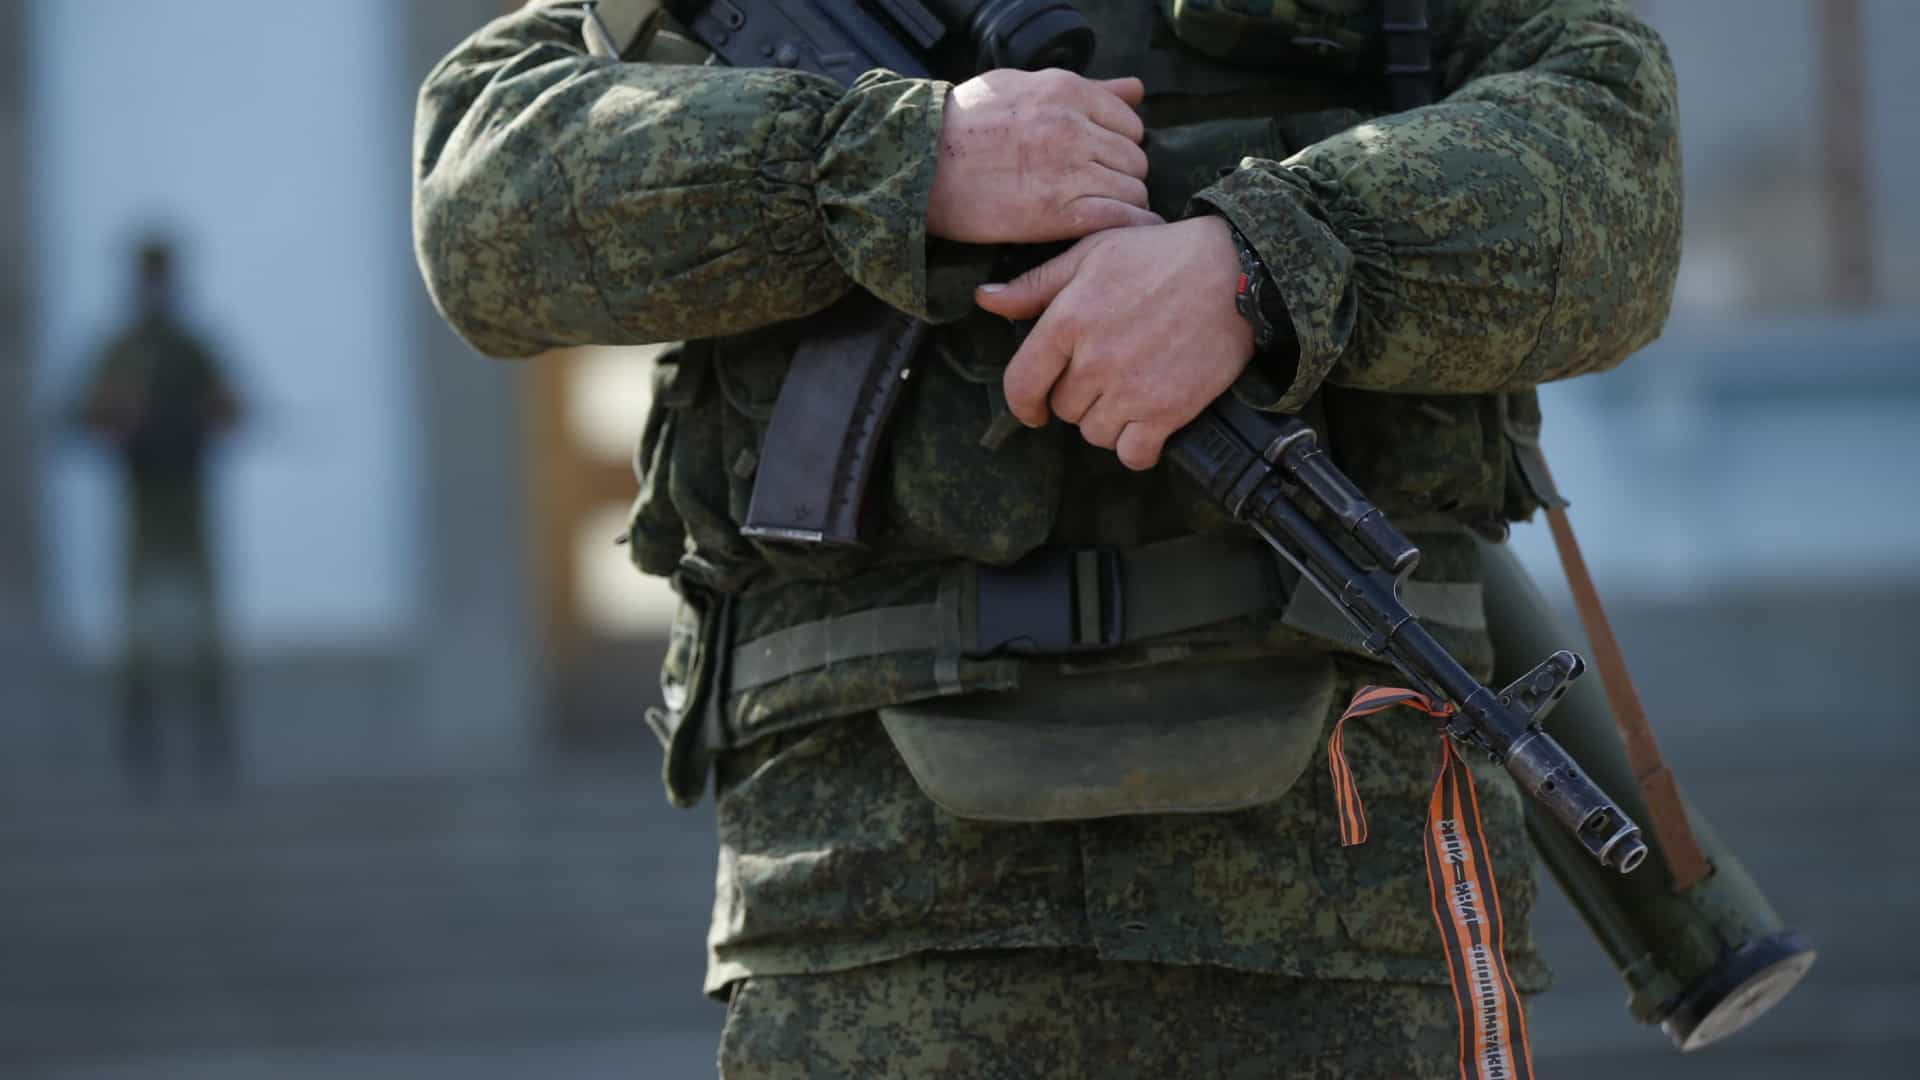 Soldado russo viola bebé de um ano